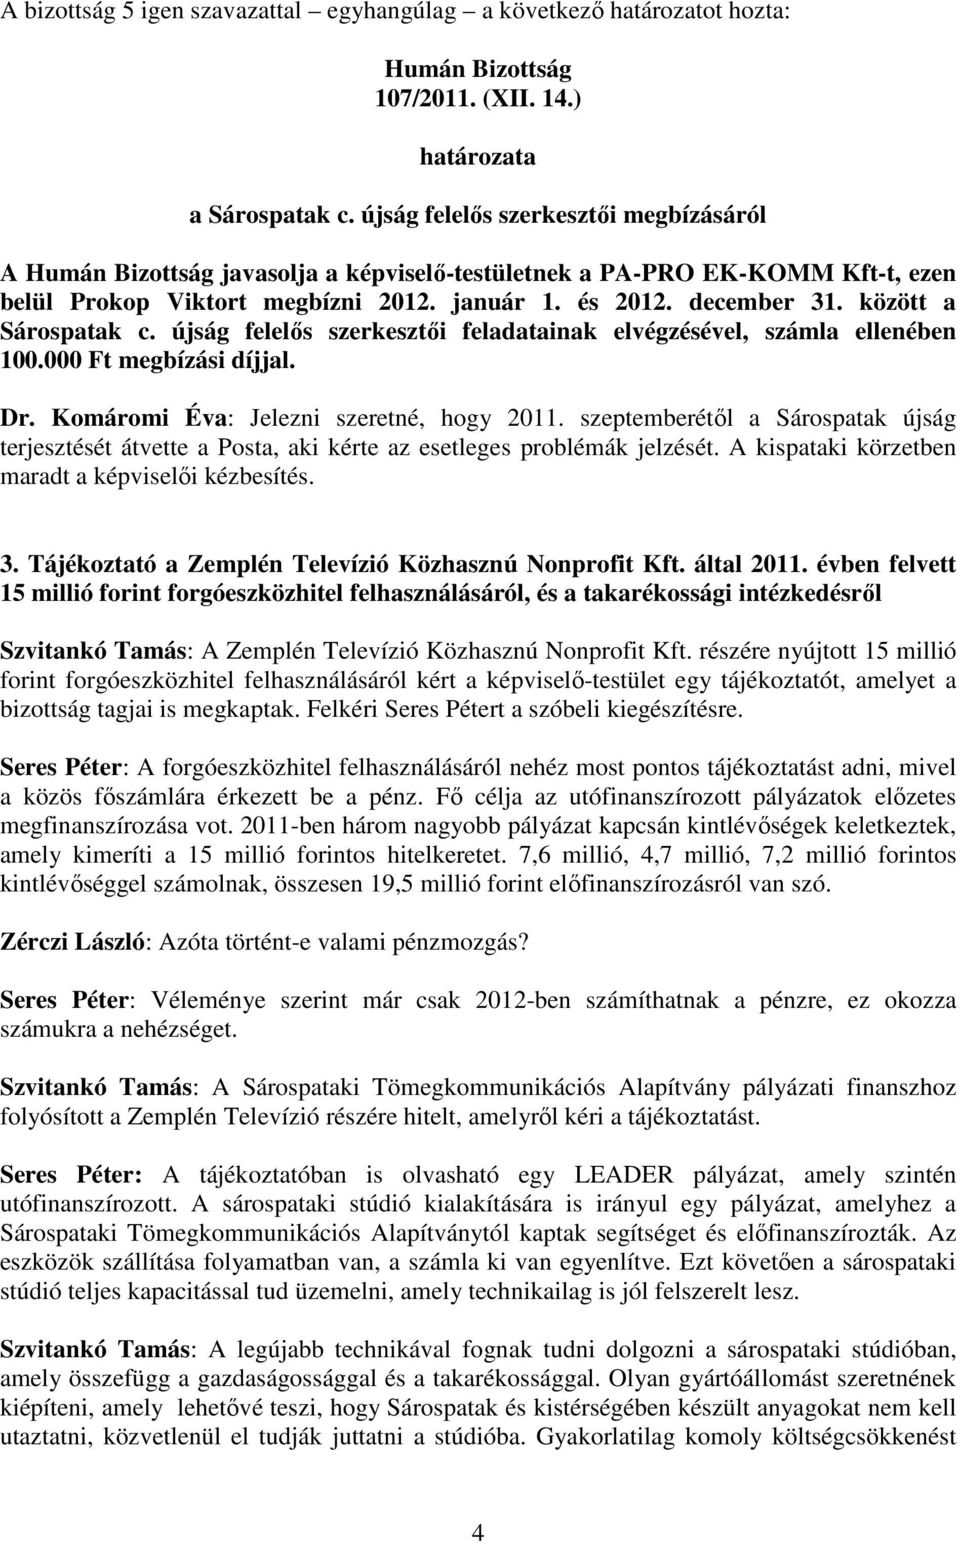 újság felelıs szerkesztıi feladatainak elvégzésével, számla ellenében 100.000 Ft megbízási díjjal. Dr. Komáromi Éva: Jelezni szeretné, hogy 2011.